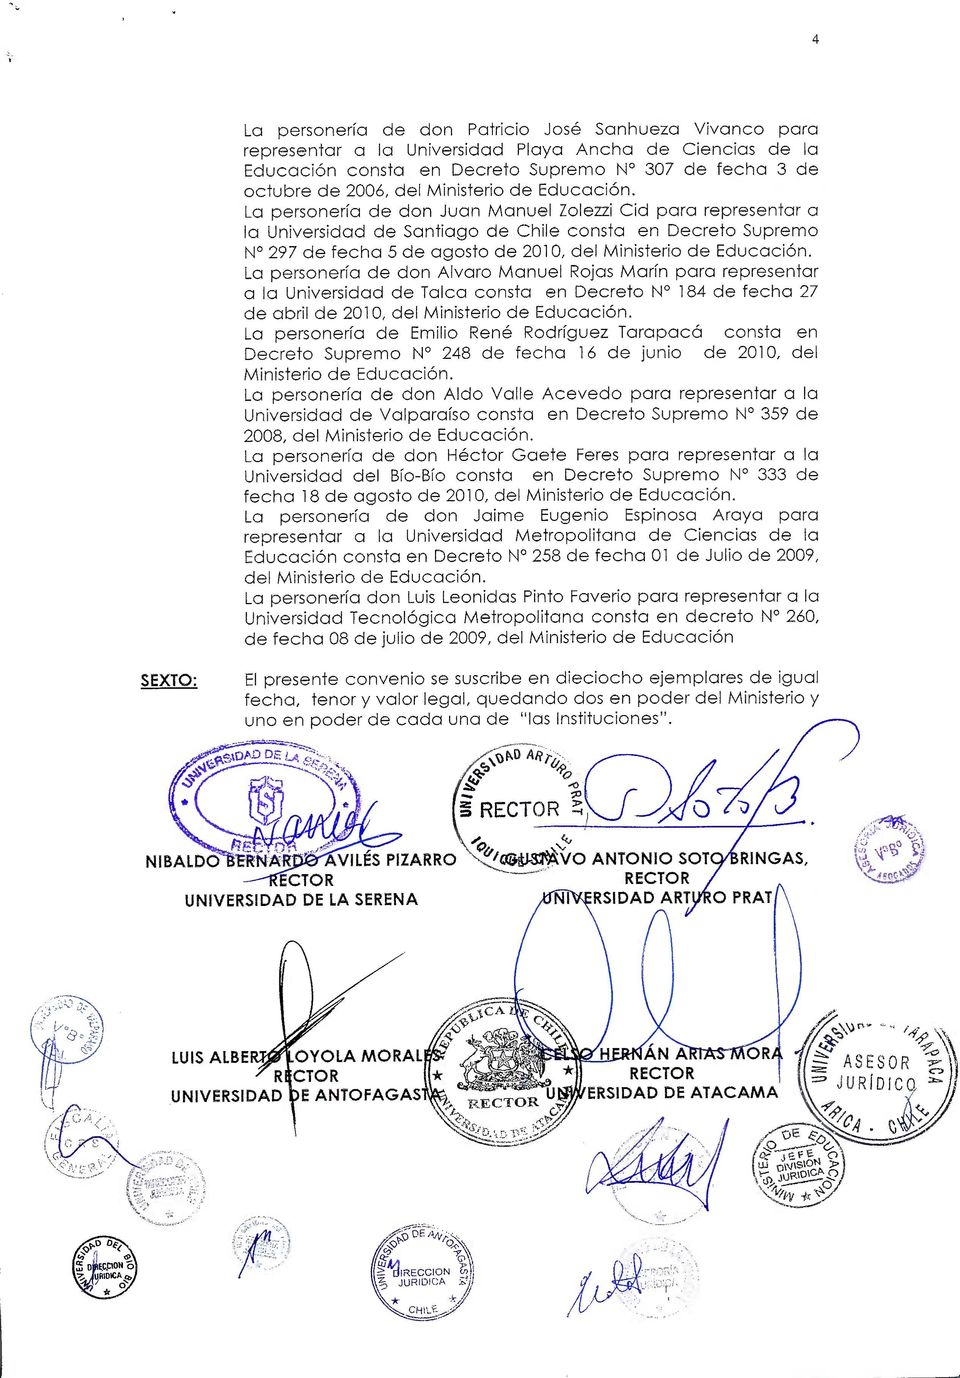 La personería de don Juan Manuel Zolezzi Cid para representar a la Universidad de Santiago de Chile consta en Decreto Supremo N 297 de fecha 5 de agosto de 2010, del Ministerio de Educación, La